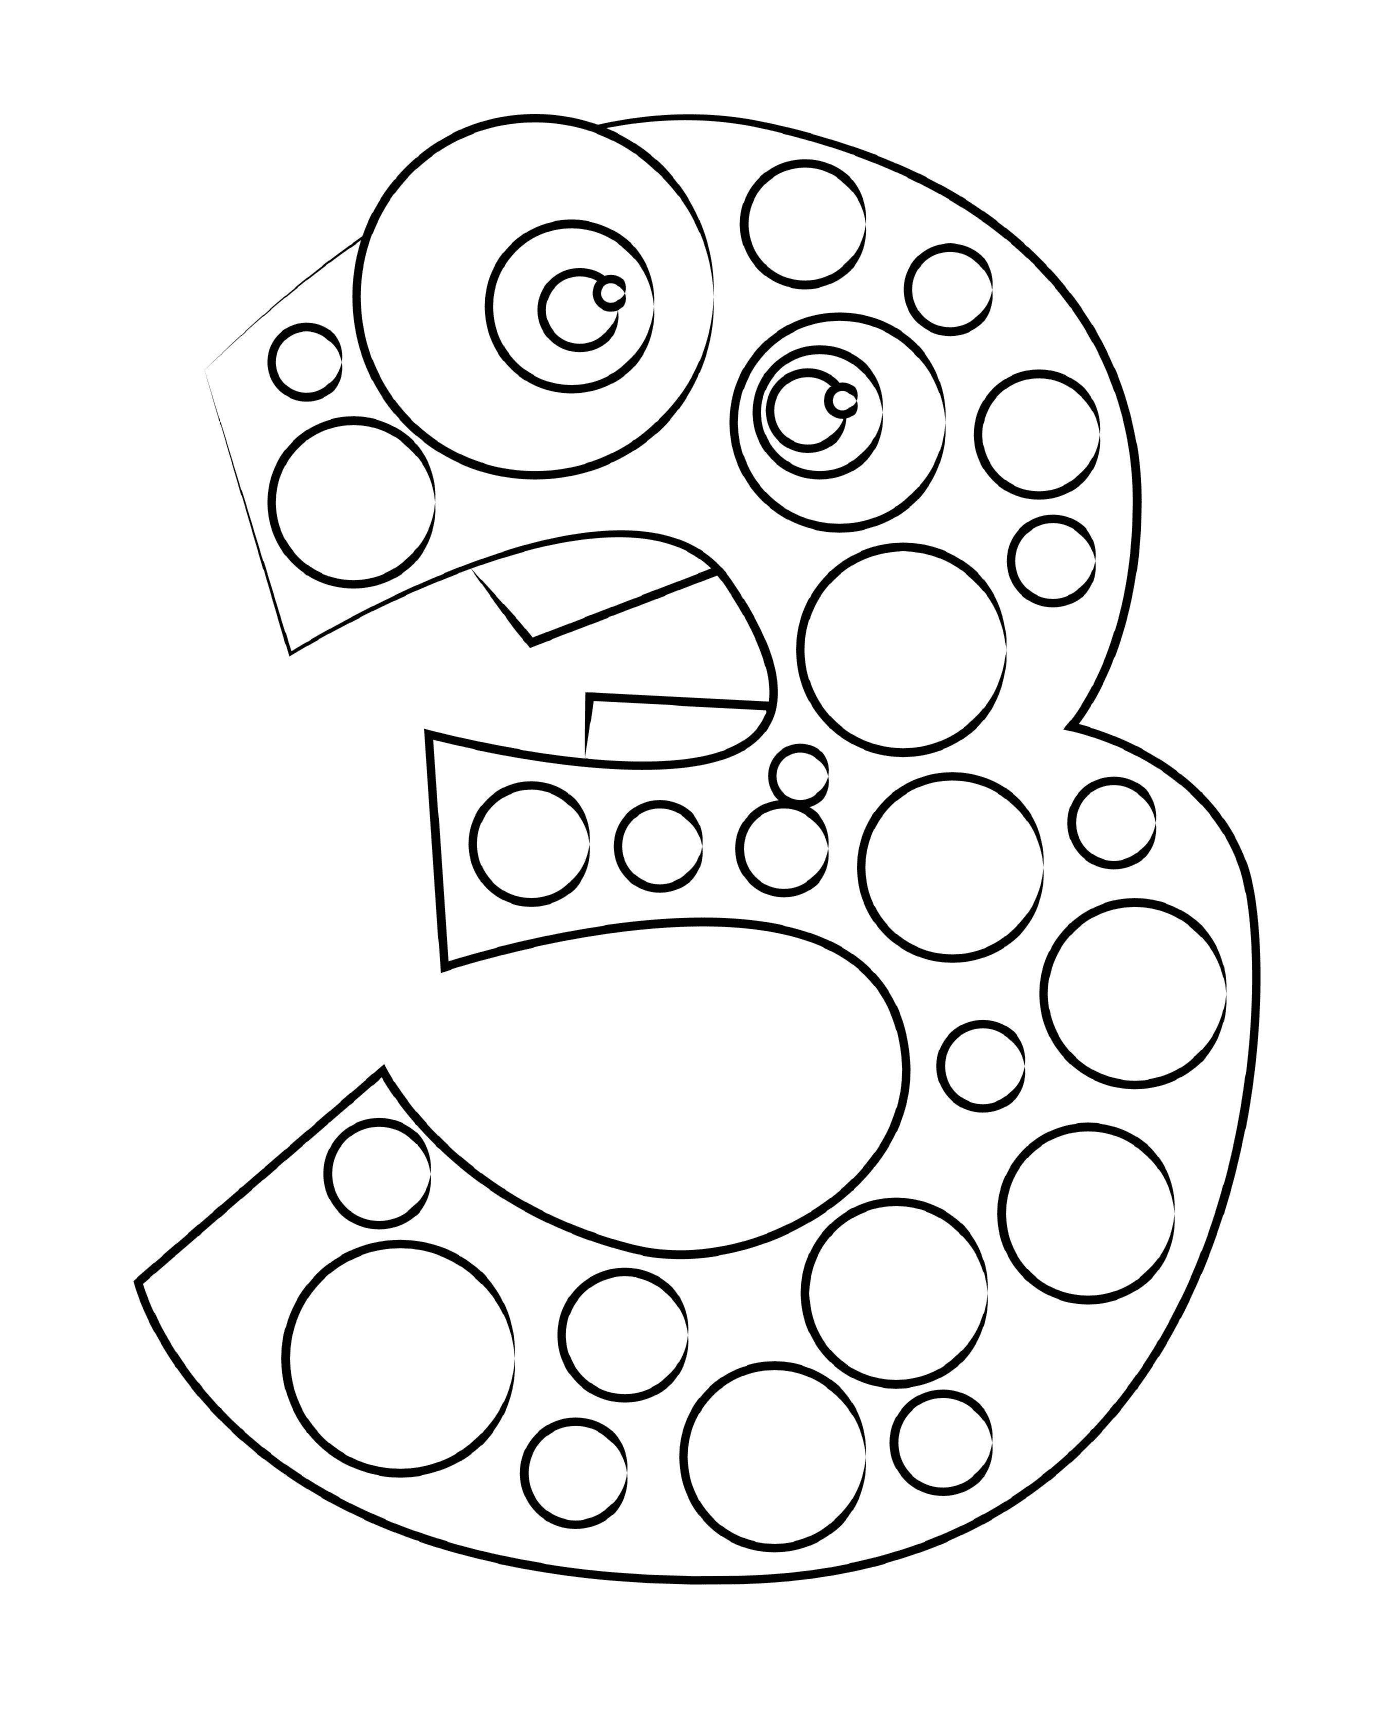  Nummer drei, bestehend aus Kreisen 